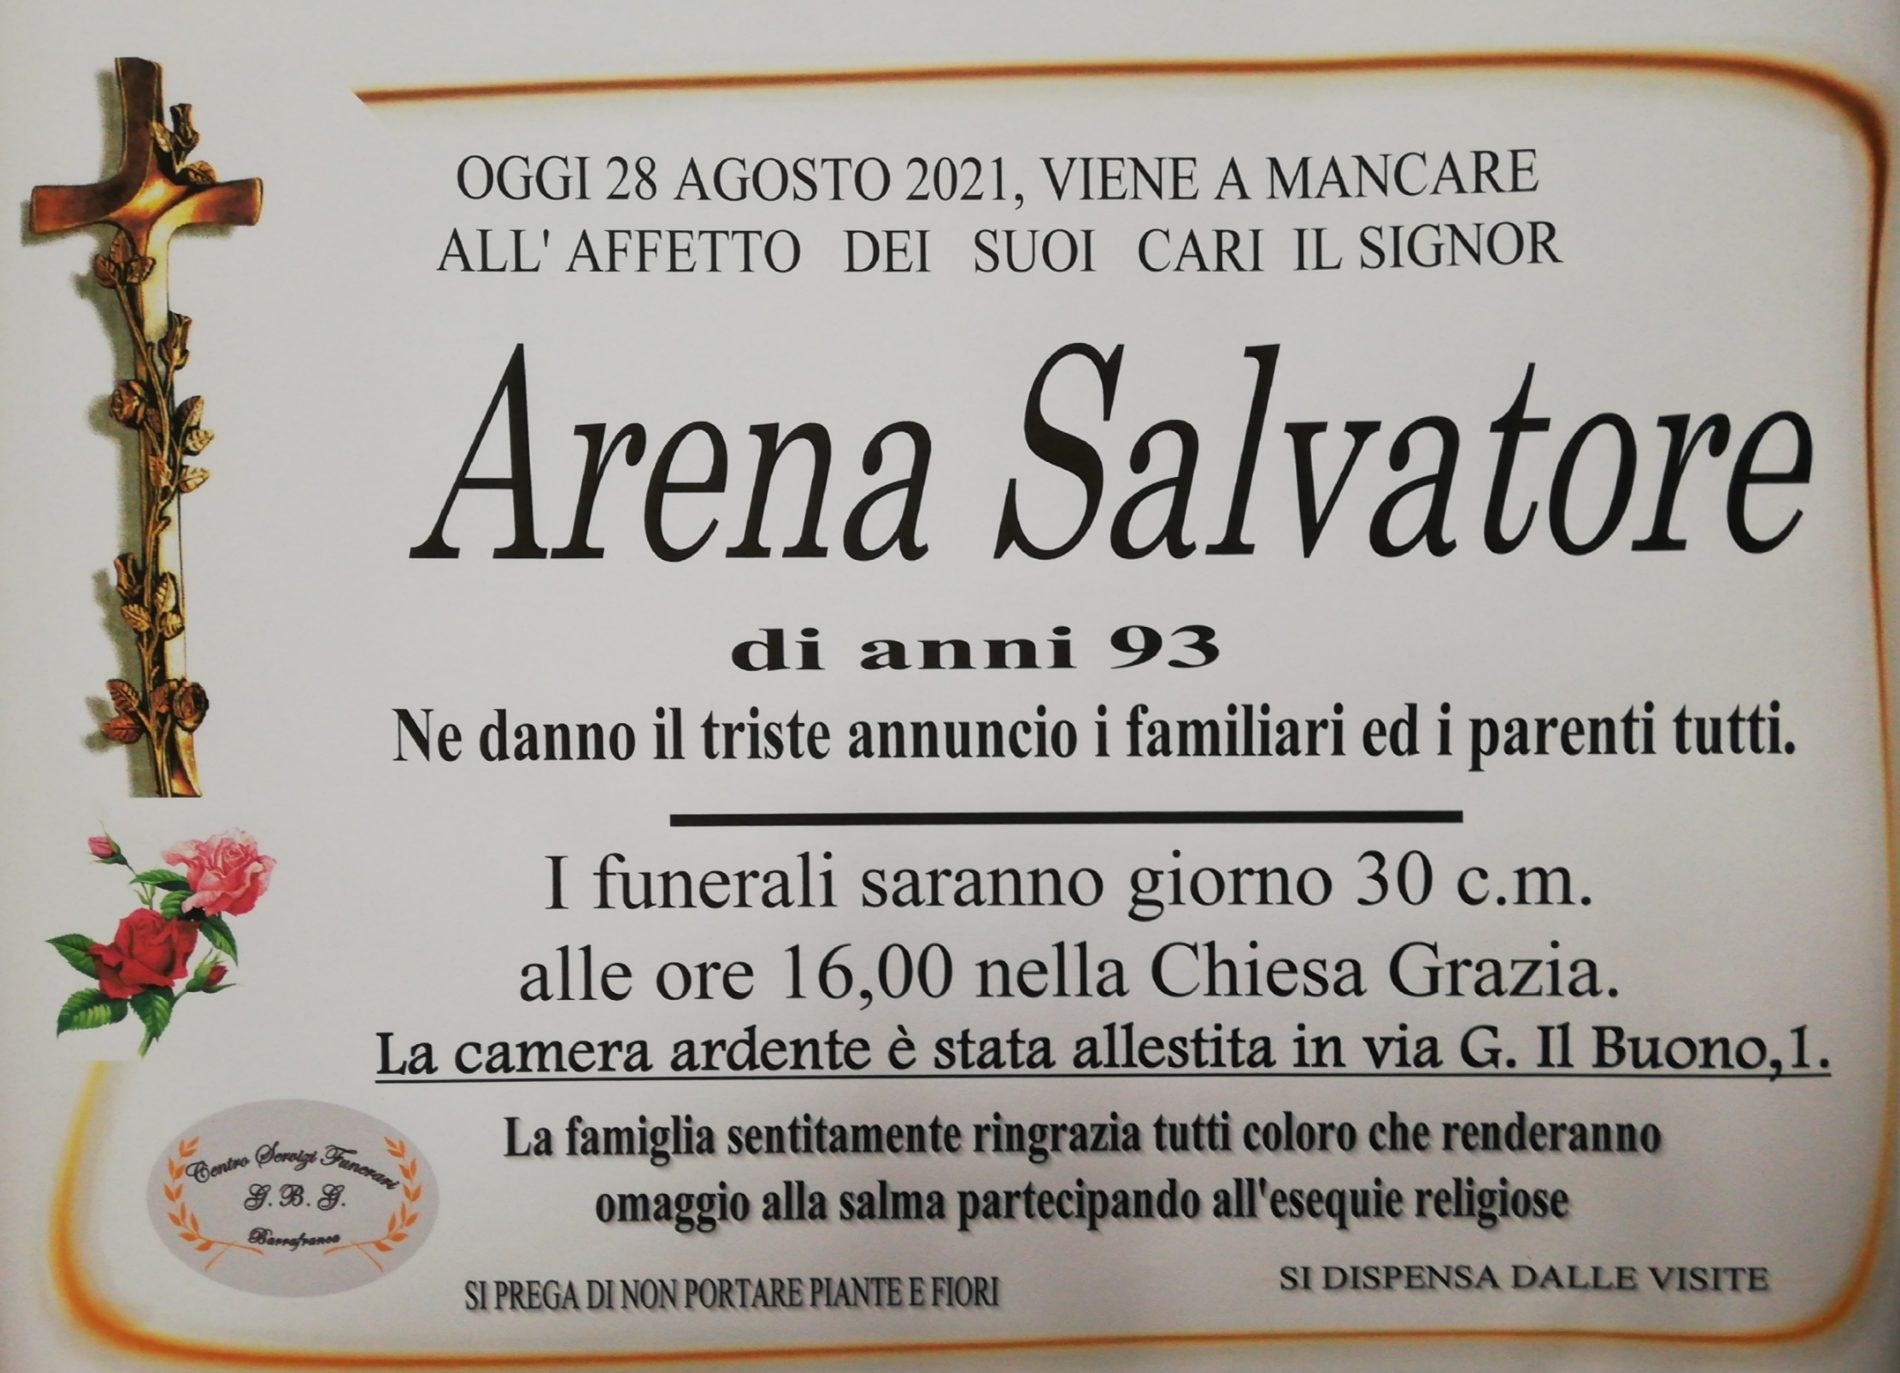 Annuncio servizi funerari agenzia G.B.G. sig. Arena Salvatore di anni 93